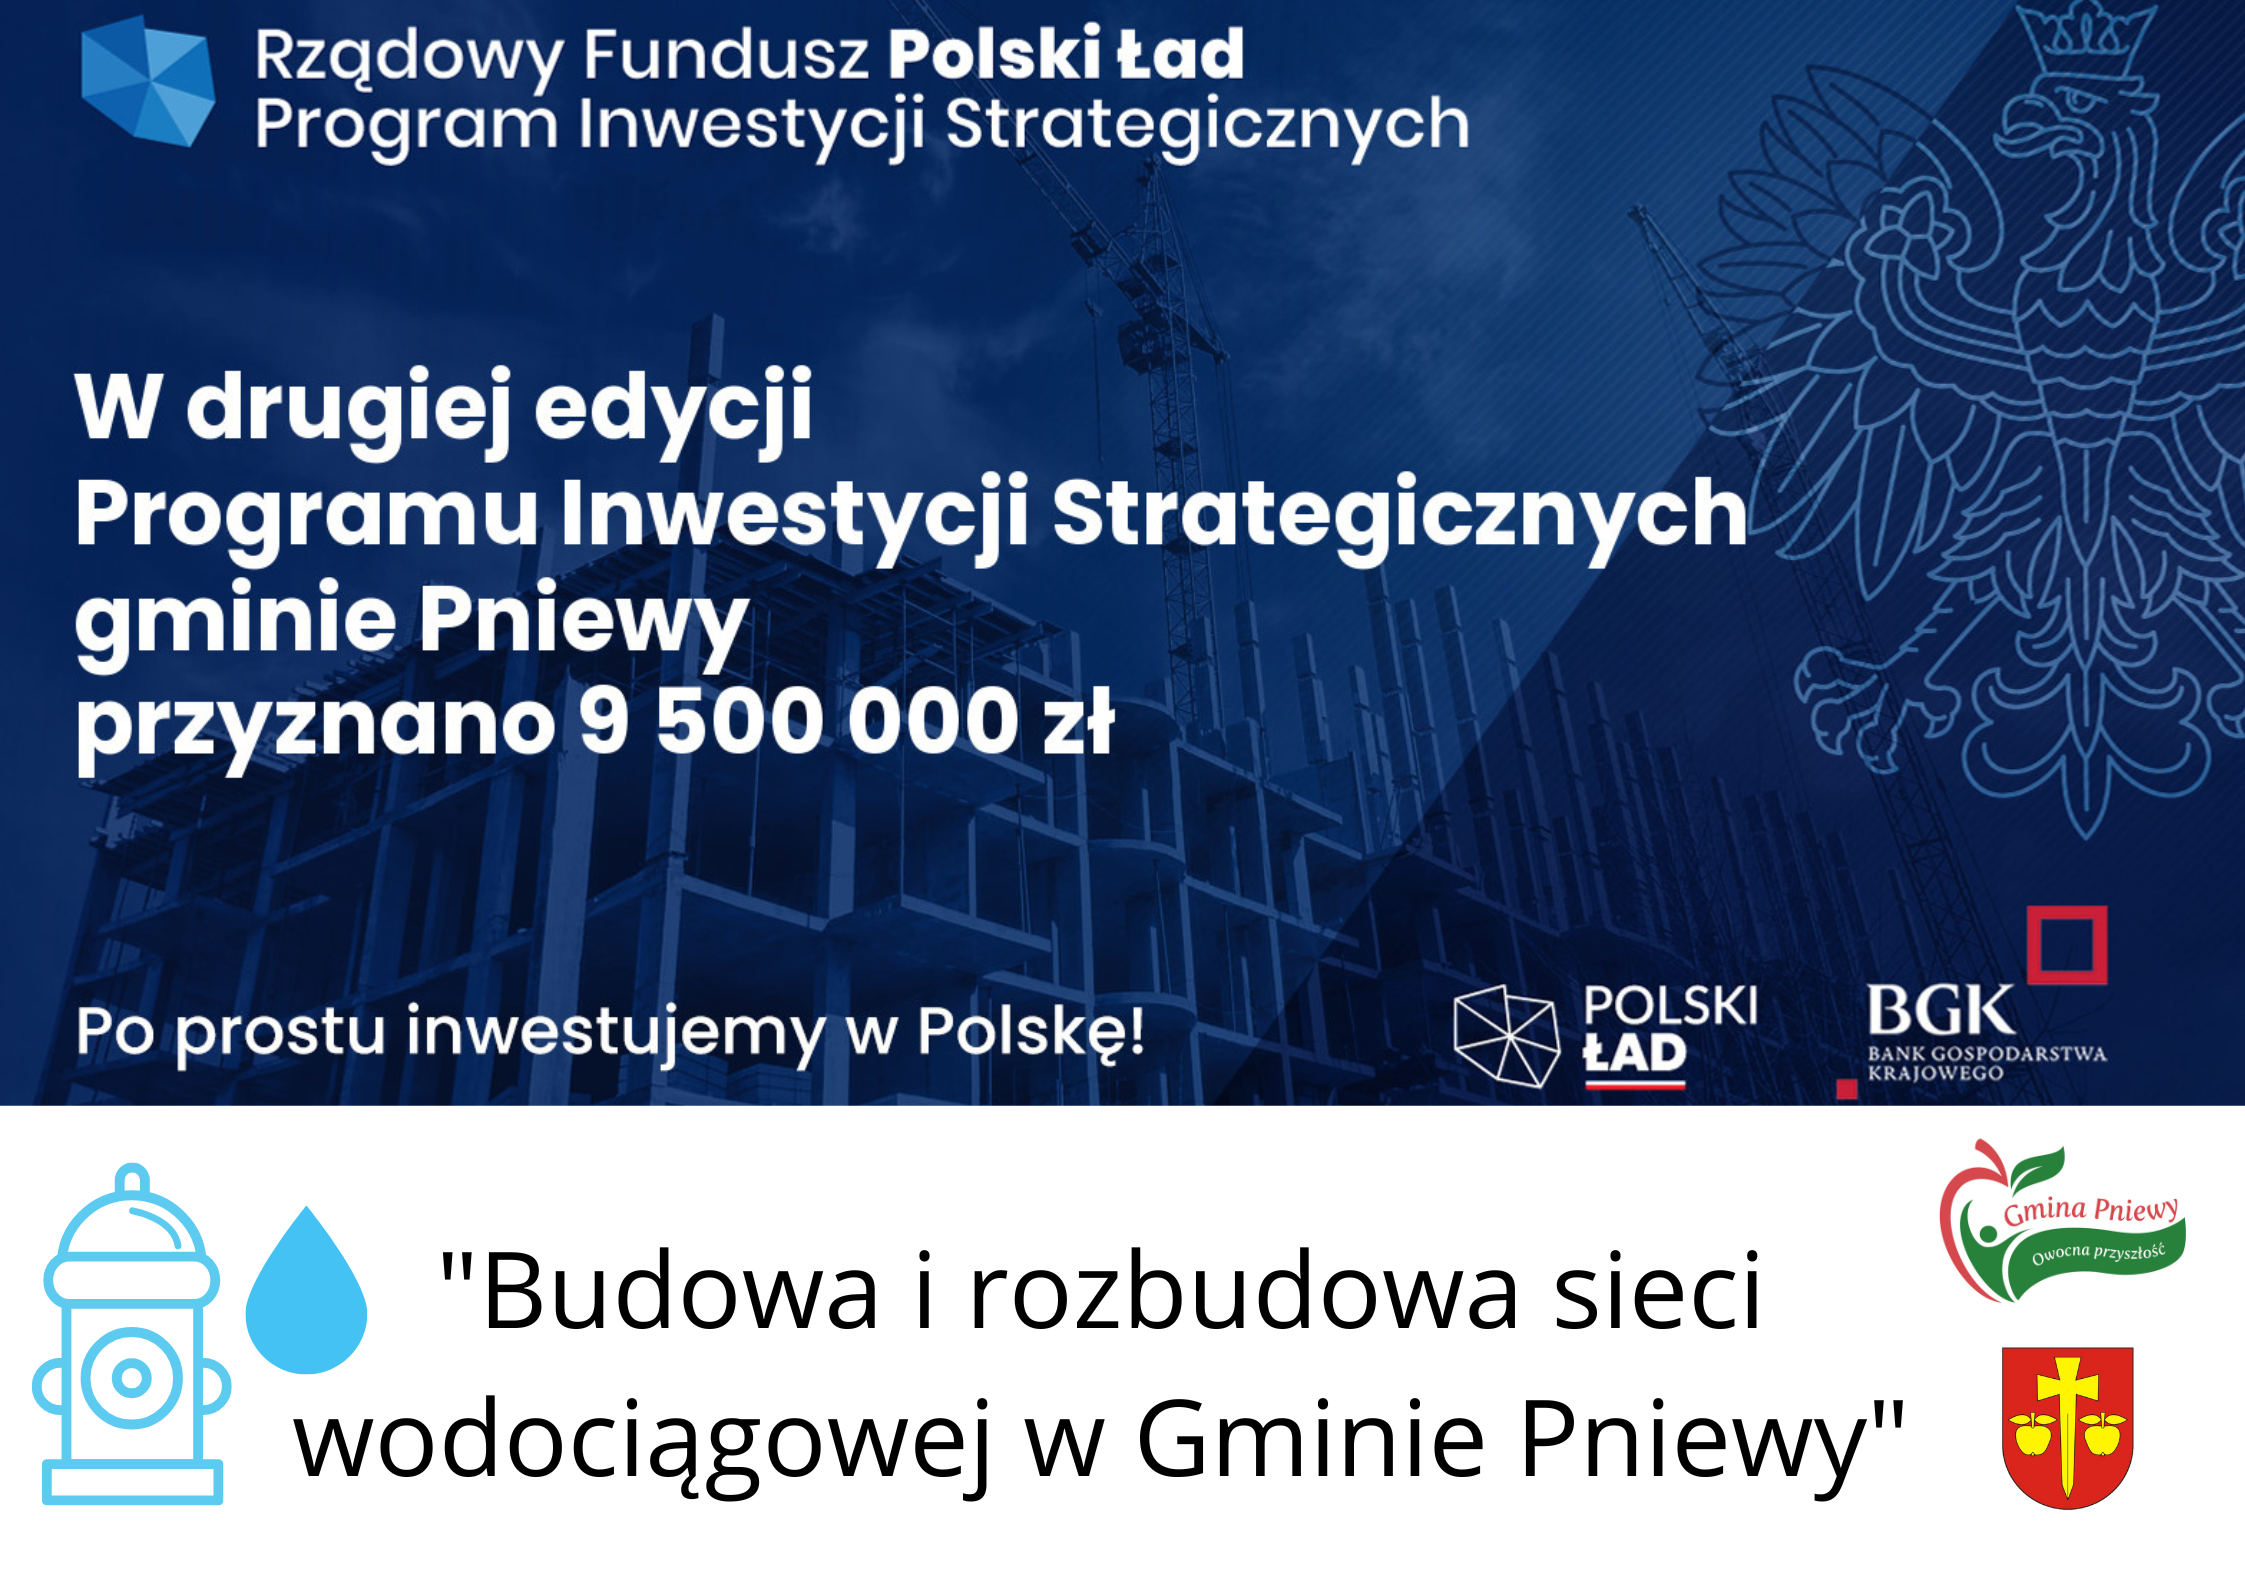 Epokowe dofinansowanie  dla Gminy Pniewy  - 9,5 mln zł na wodociąg z Polskiego Ładu